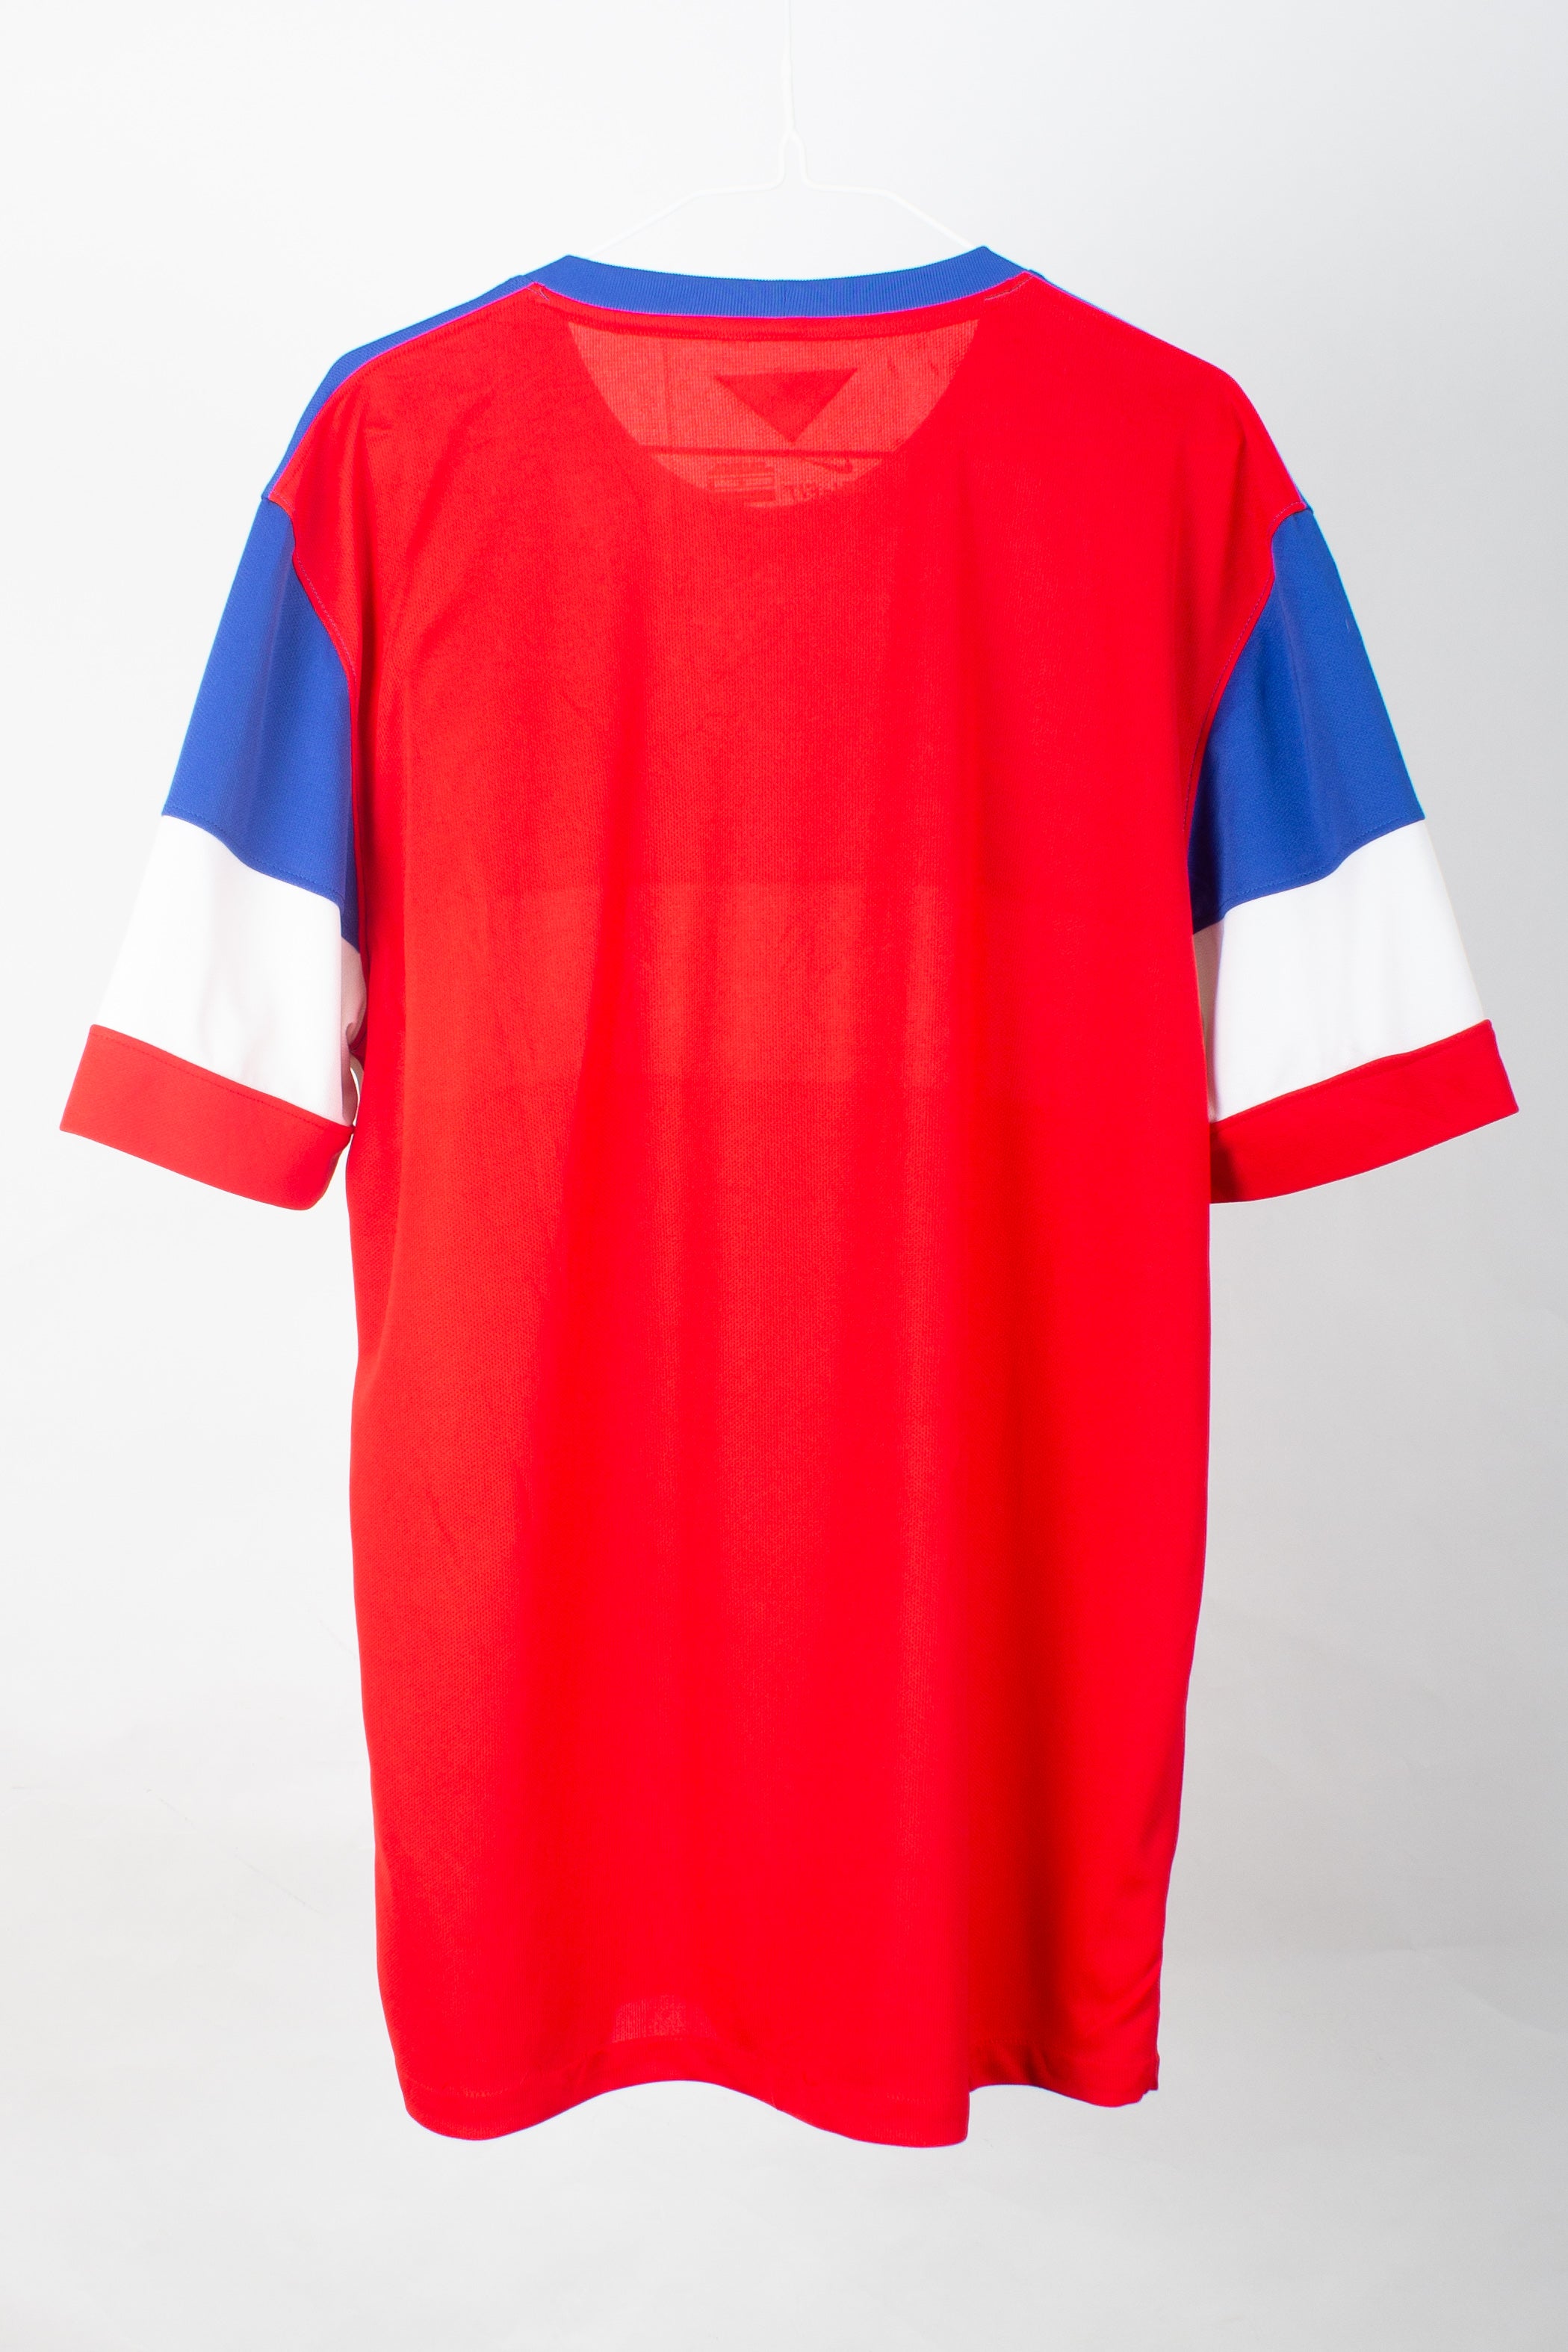 USA 2014 Away Shirt (L)